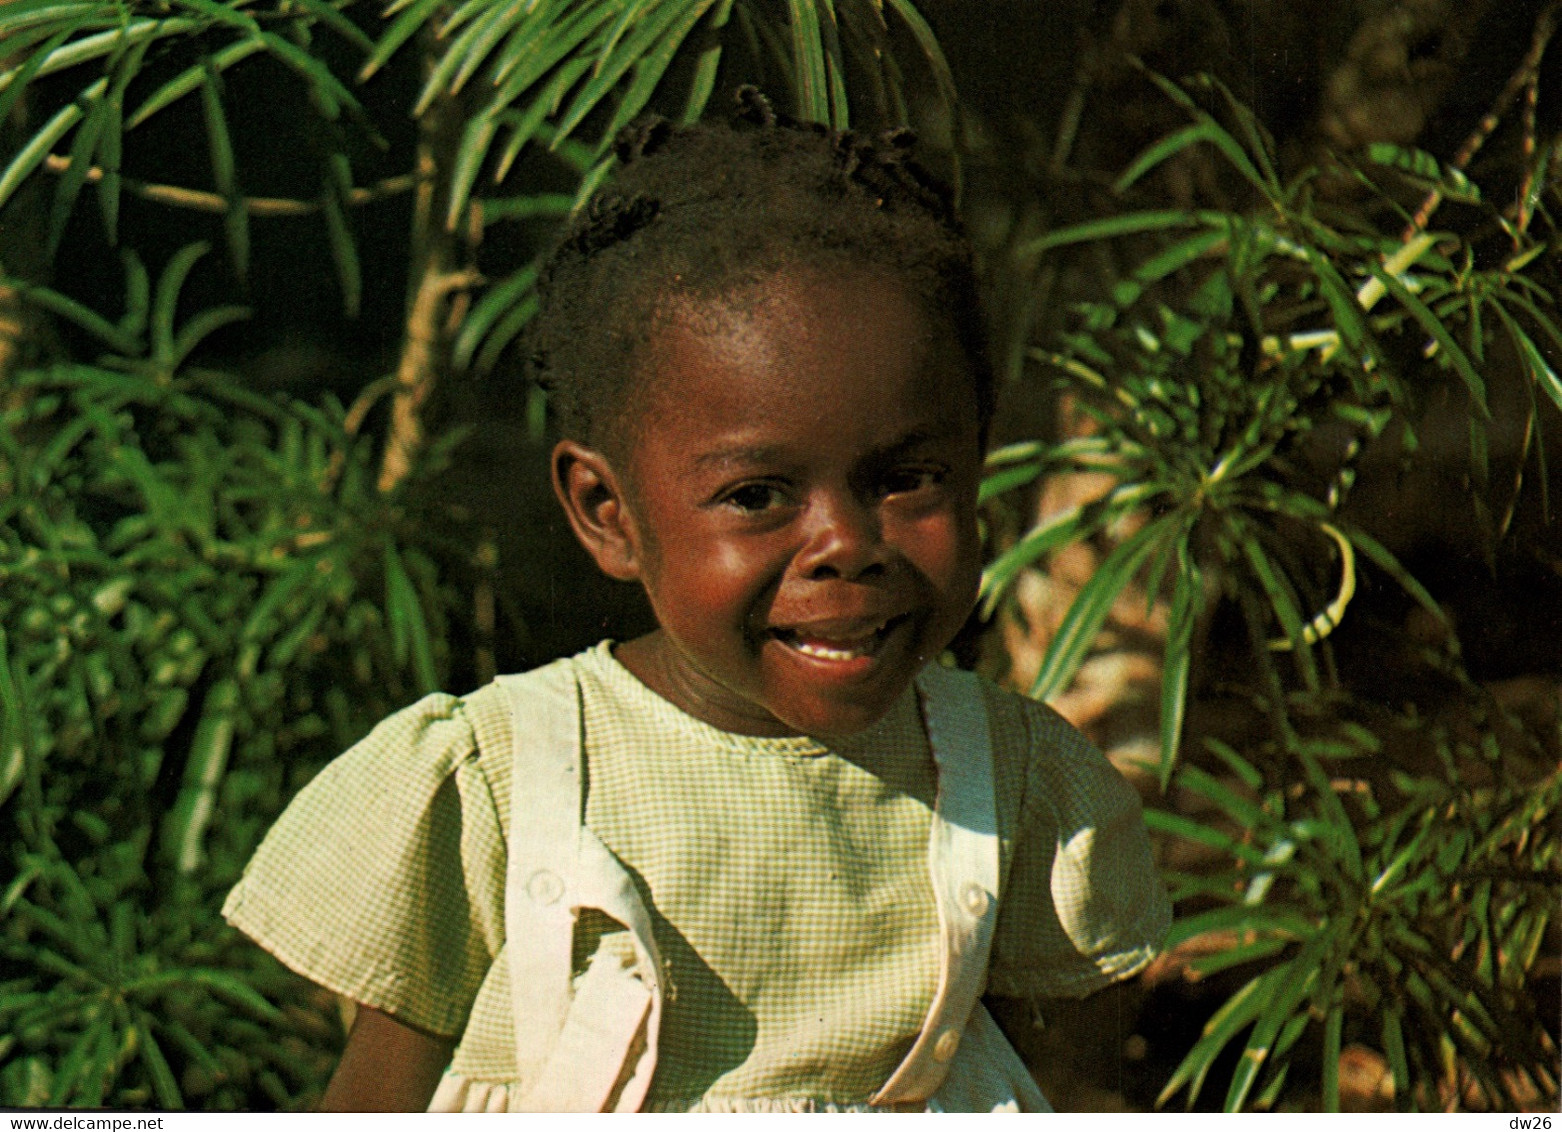 Afrique - Guinea Ecuatorial (Guinée Equatoriale) Sonrisa De Nina En Bata (sourire D'enfant) - Afrique